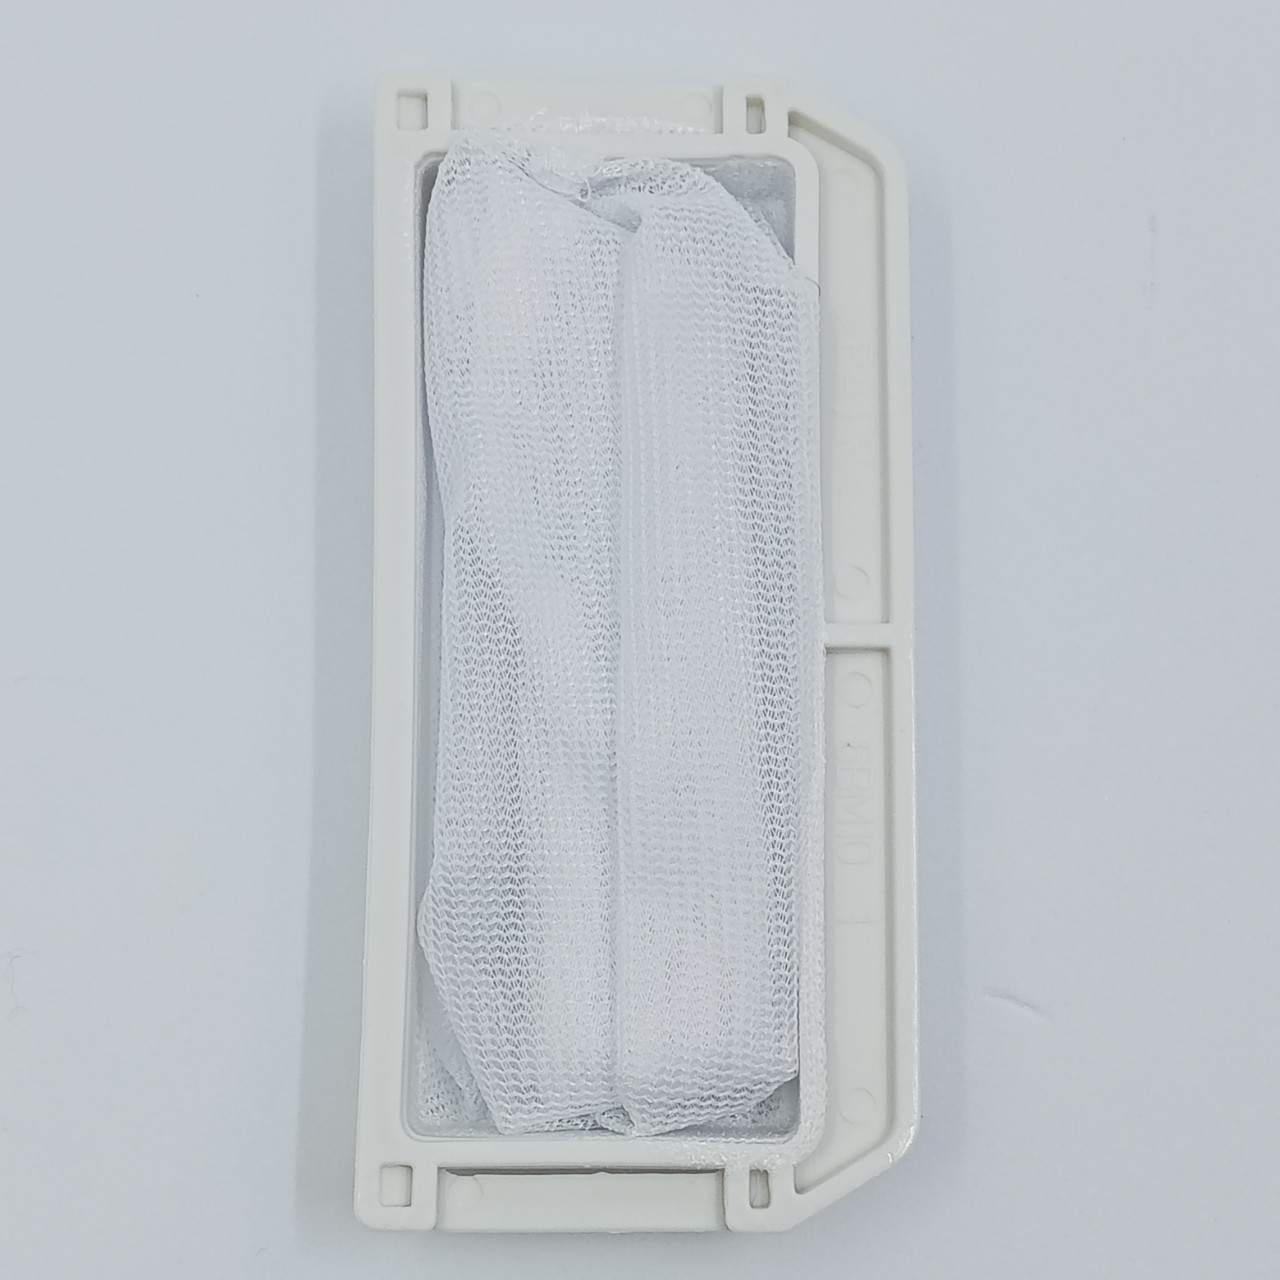 Túi lưới lọc máy giặt cho Panasonic 9kg loại to 4.7cm x 10.2cm - Túi lọc máy giặt  Panasonic - Lưới lọc máy giặt  Panasonic